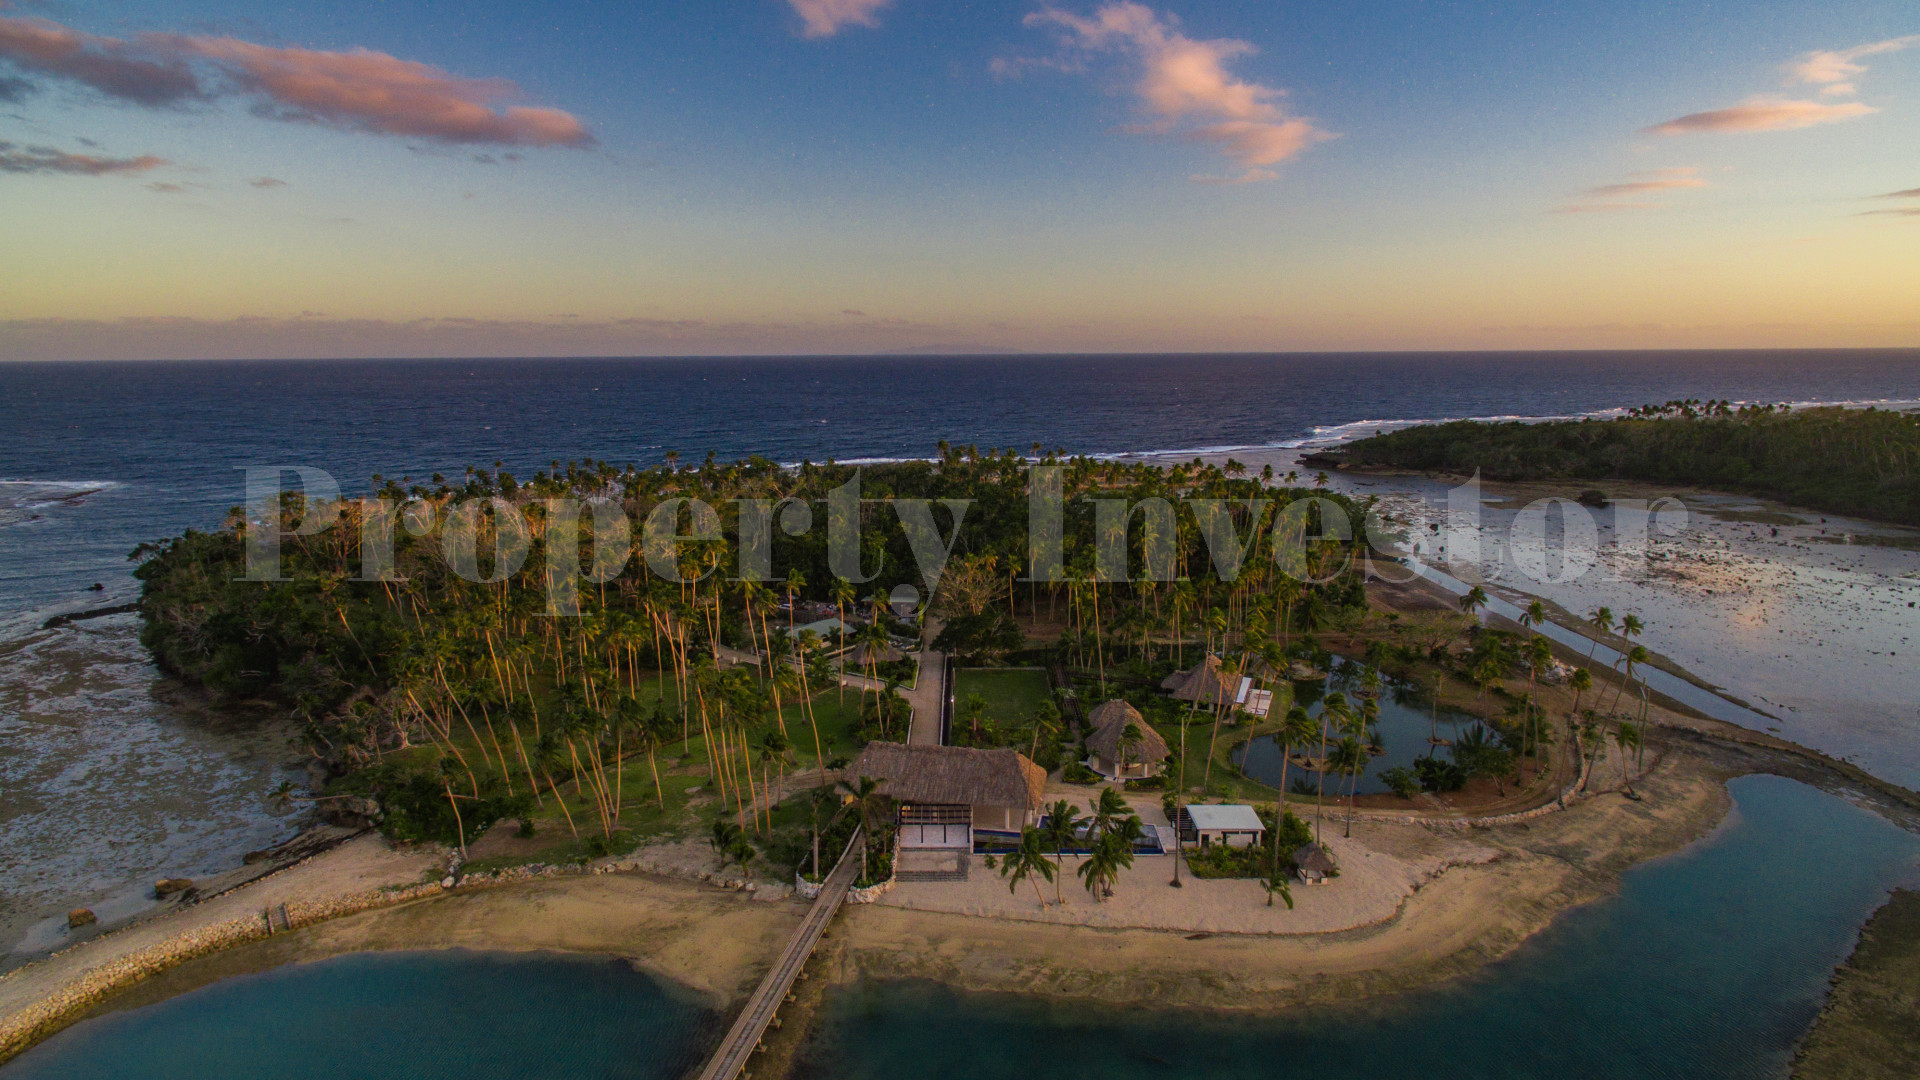 3,123 m² Private Island Freehold Lot for Sale in Vanua Levu, Fiji (Lot 2)